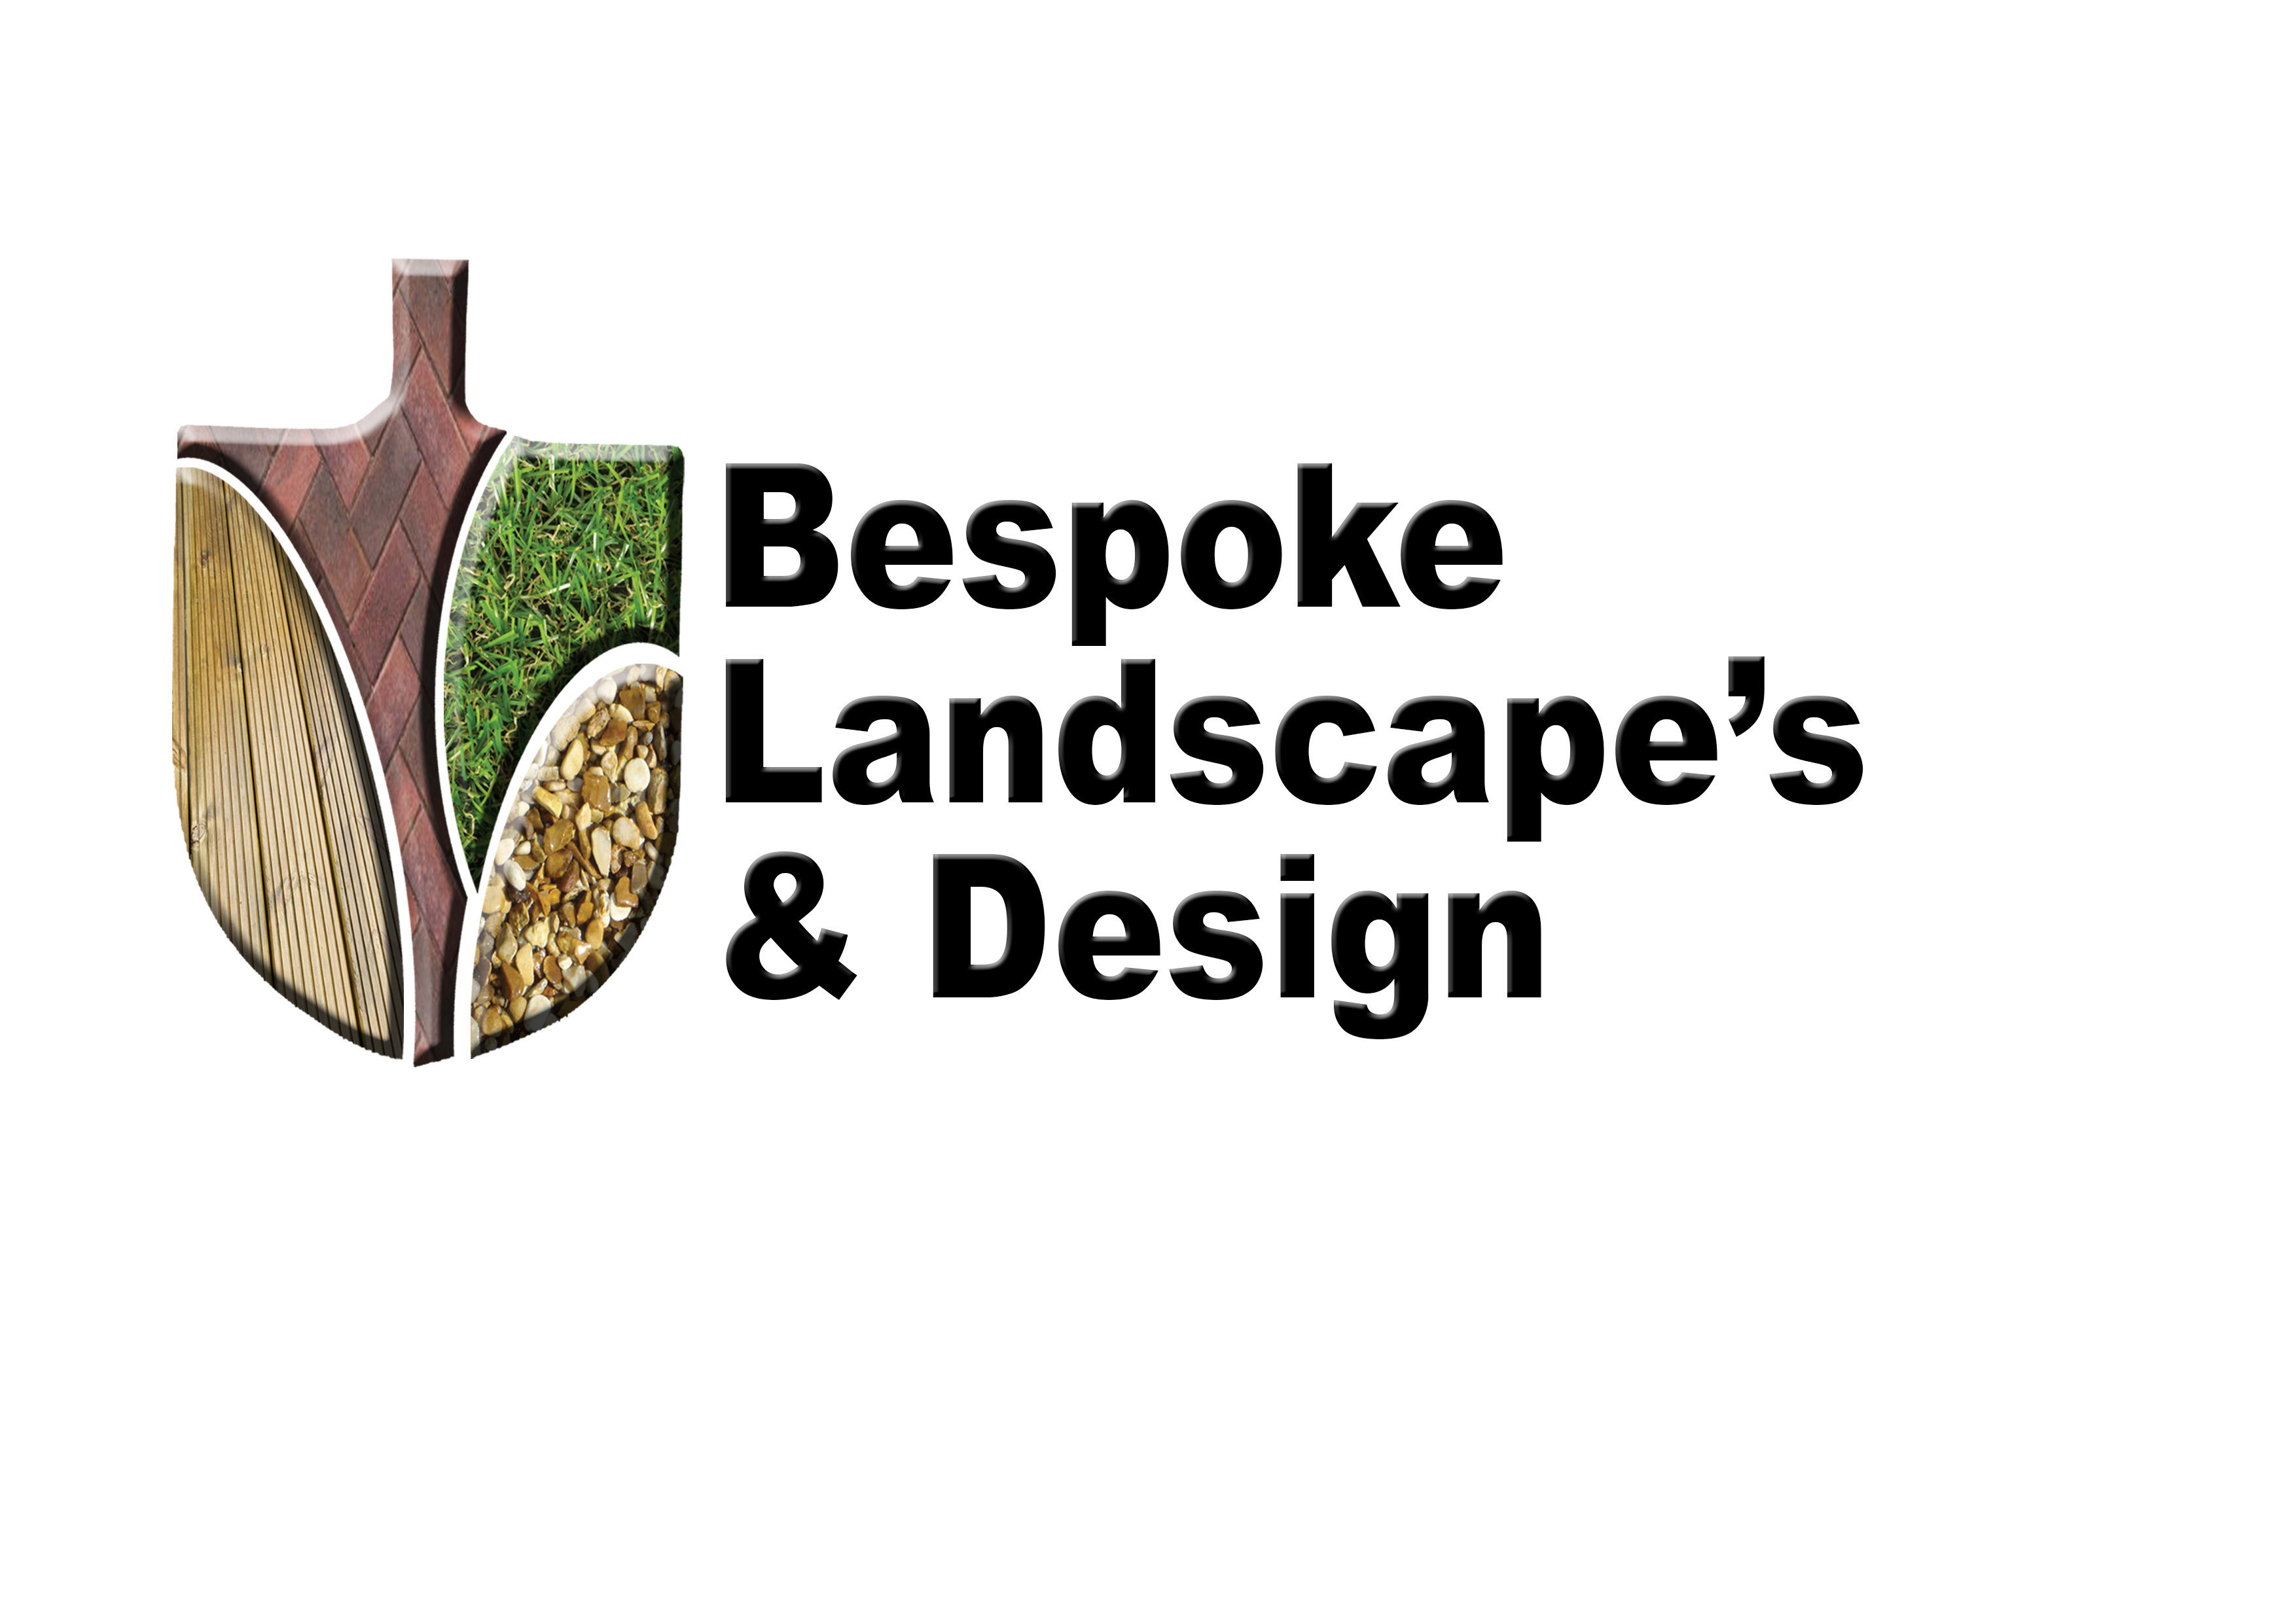 Bespoke Landscape's & Design